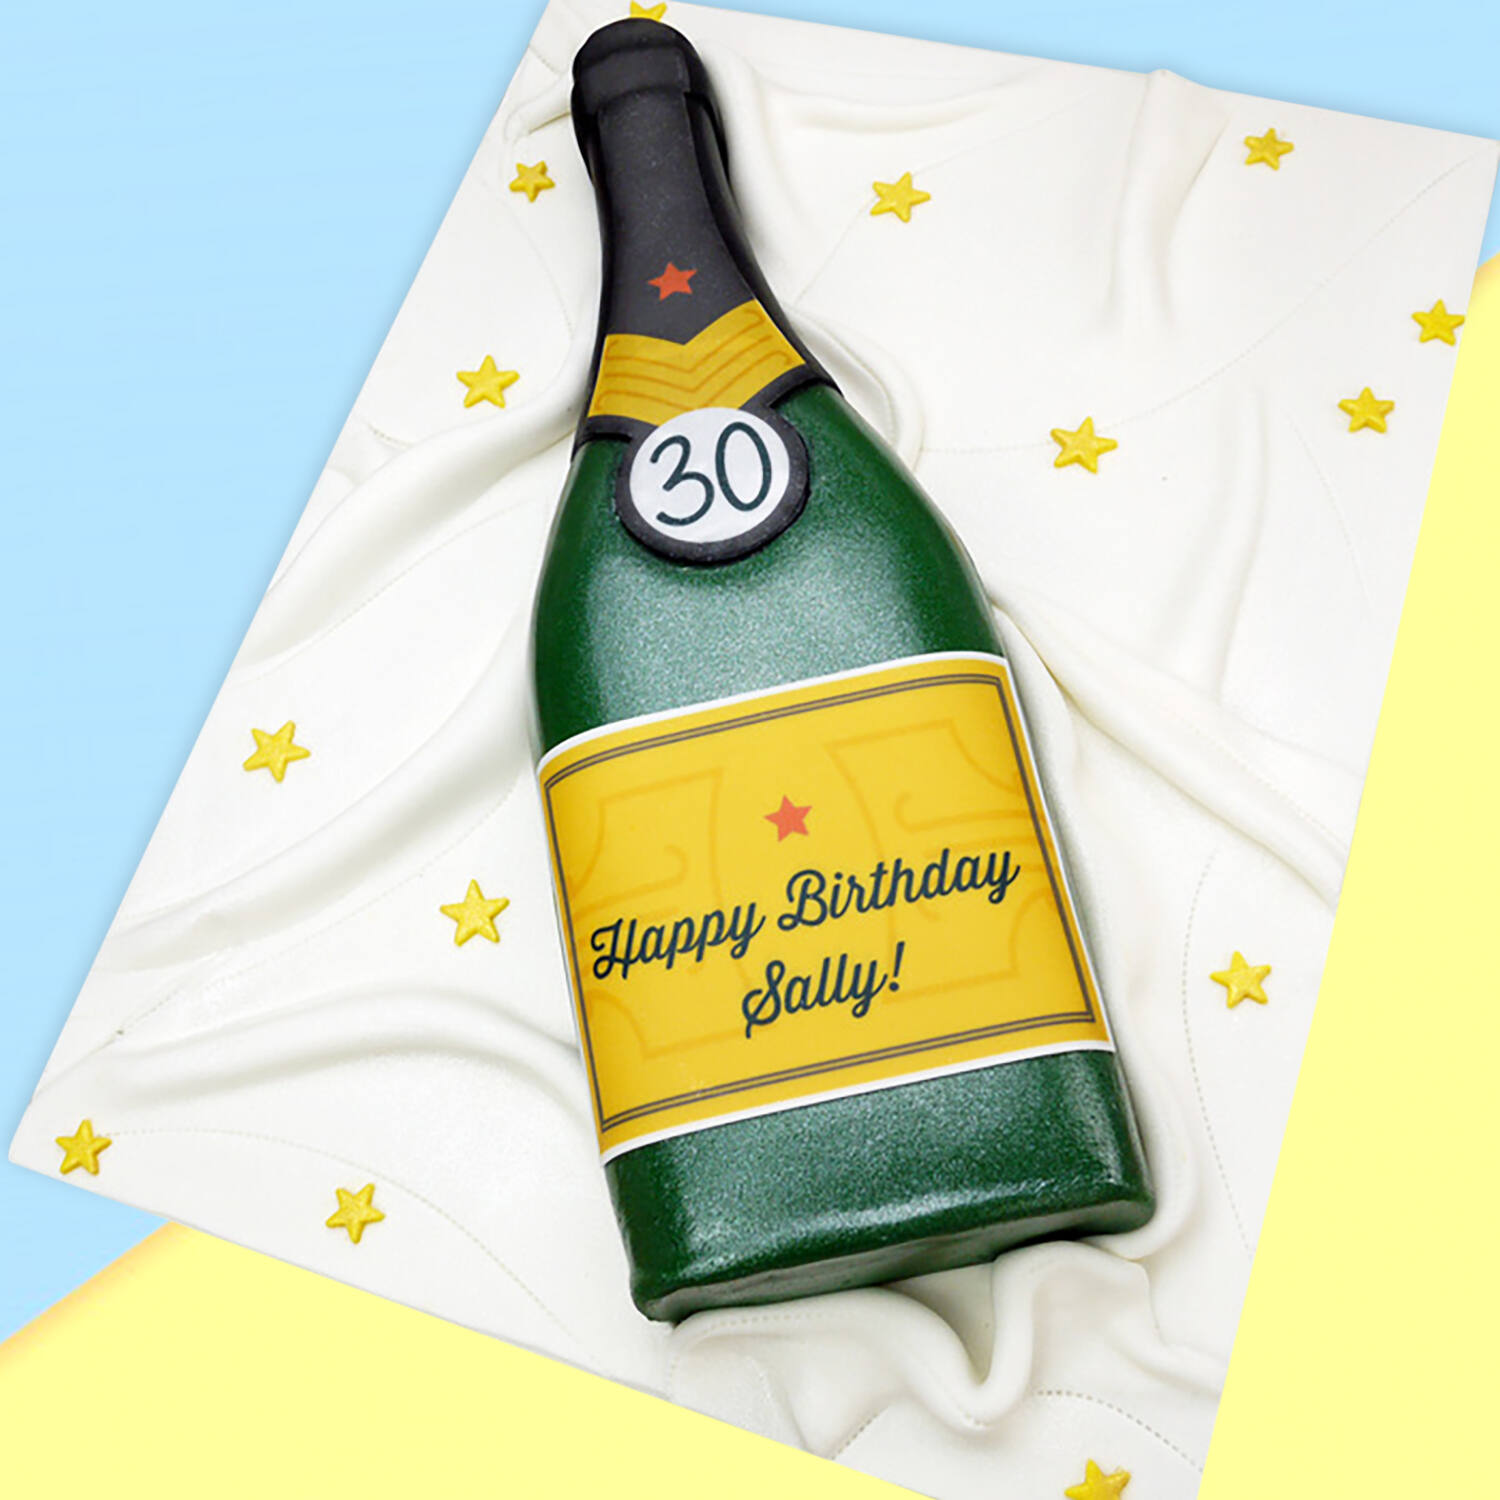 Champagne / Beer Bottle Agar Agar Birthday Cakes, Food & Drinks, Homemade  Bakes on Carousell